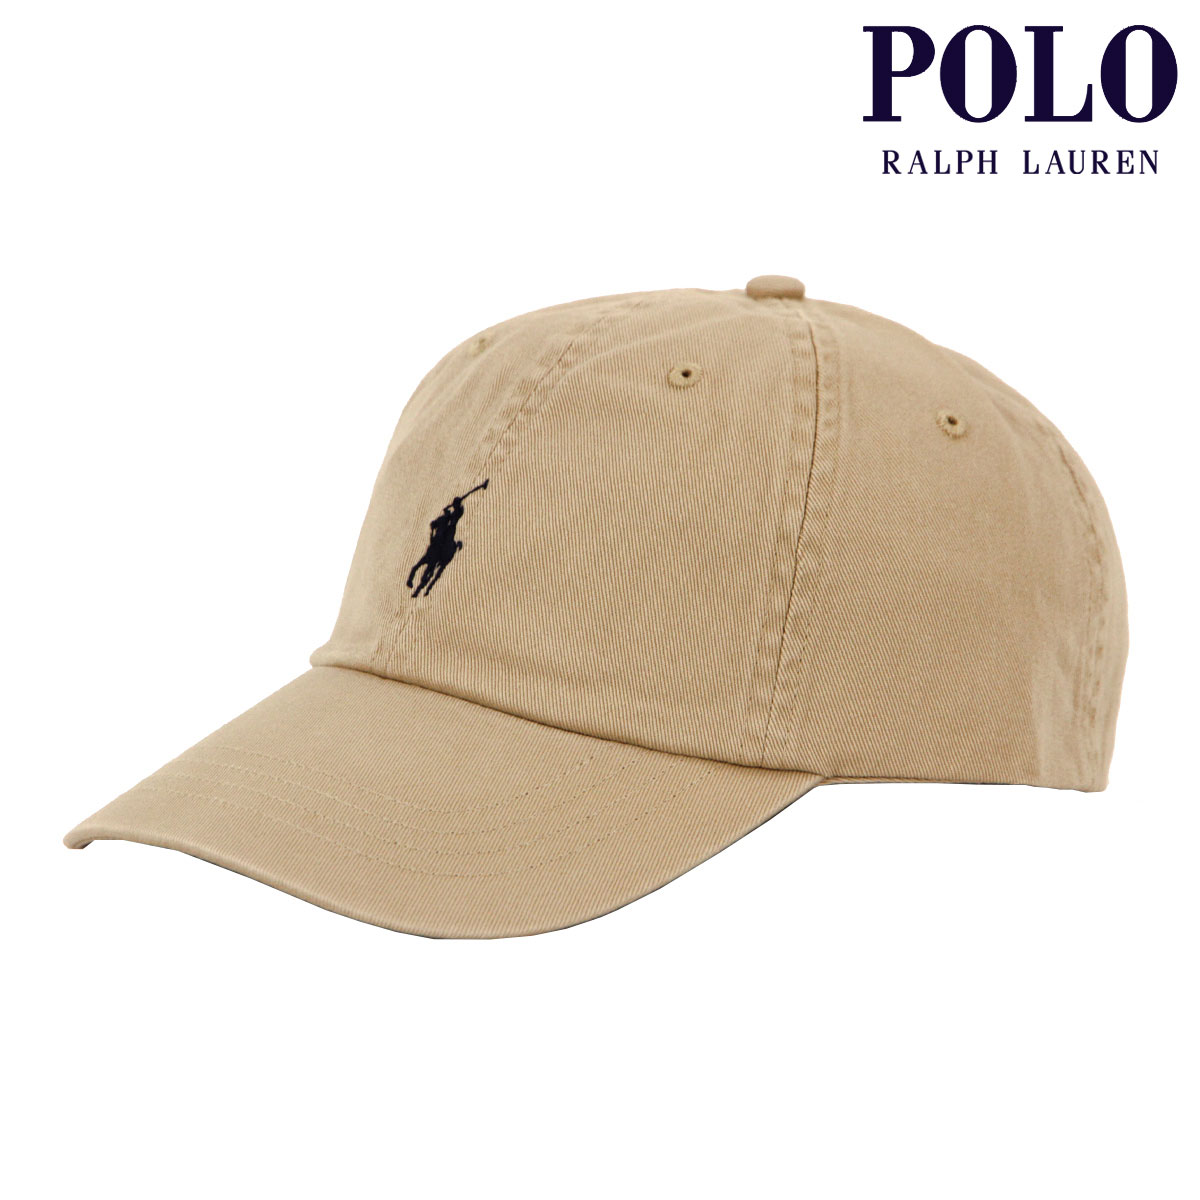 ポロ ラルフ ローレン ポロ ラルフローレン メンズ レディース キャップ 正規品 POLO RALPH LAUREN 帽子 ロゴ ポニー CLASSIC SPORTS CAP BEIGE 710548524 父の日 プレゼント ラッピング